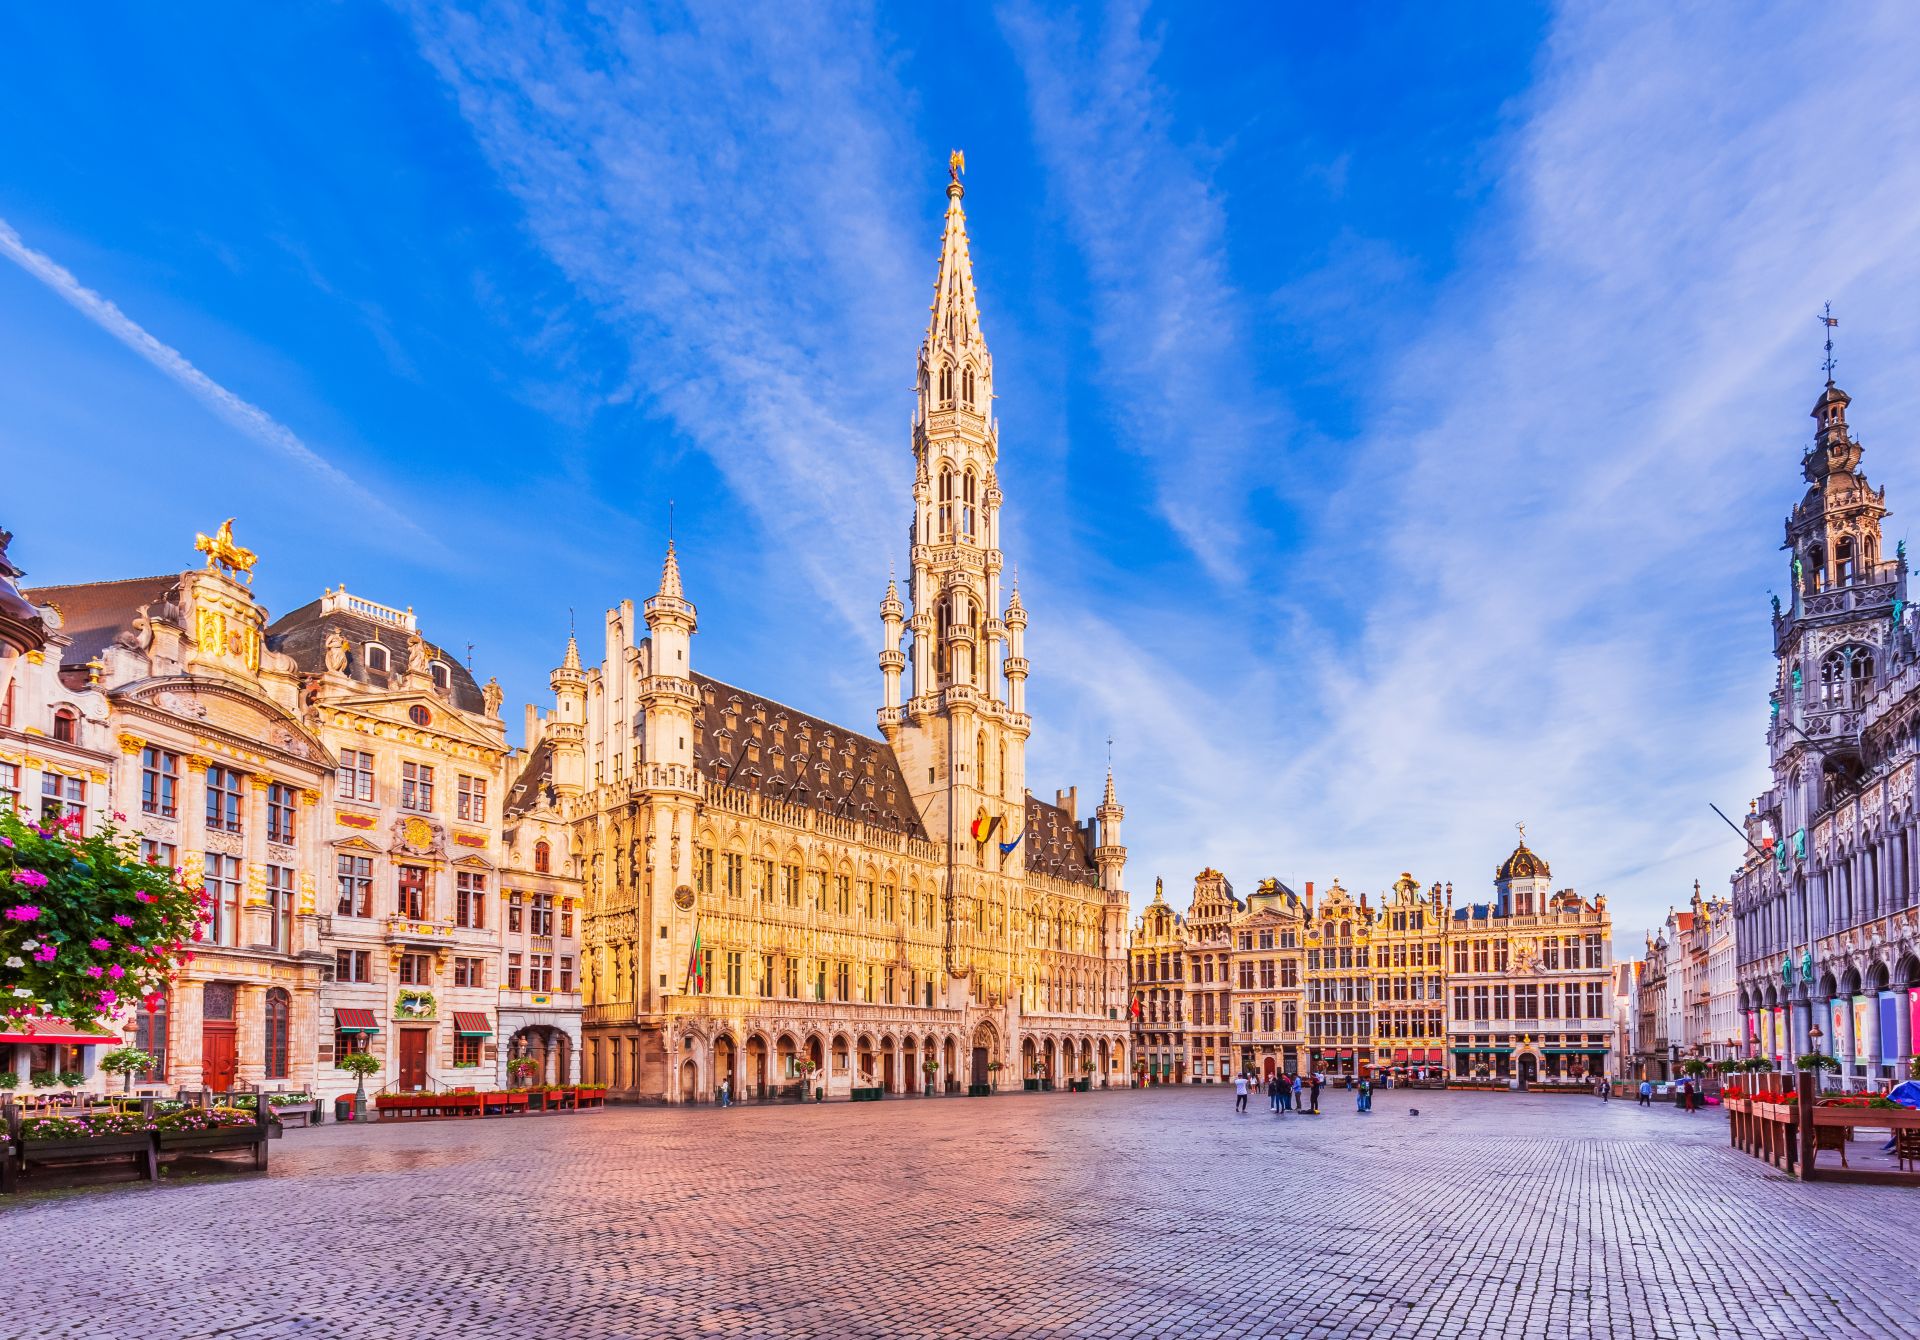 Brussels, Belgium. Large square